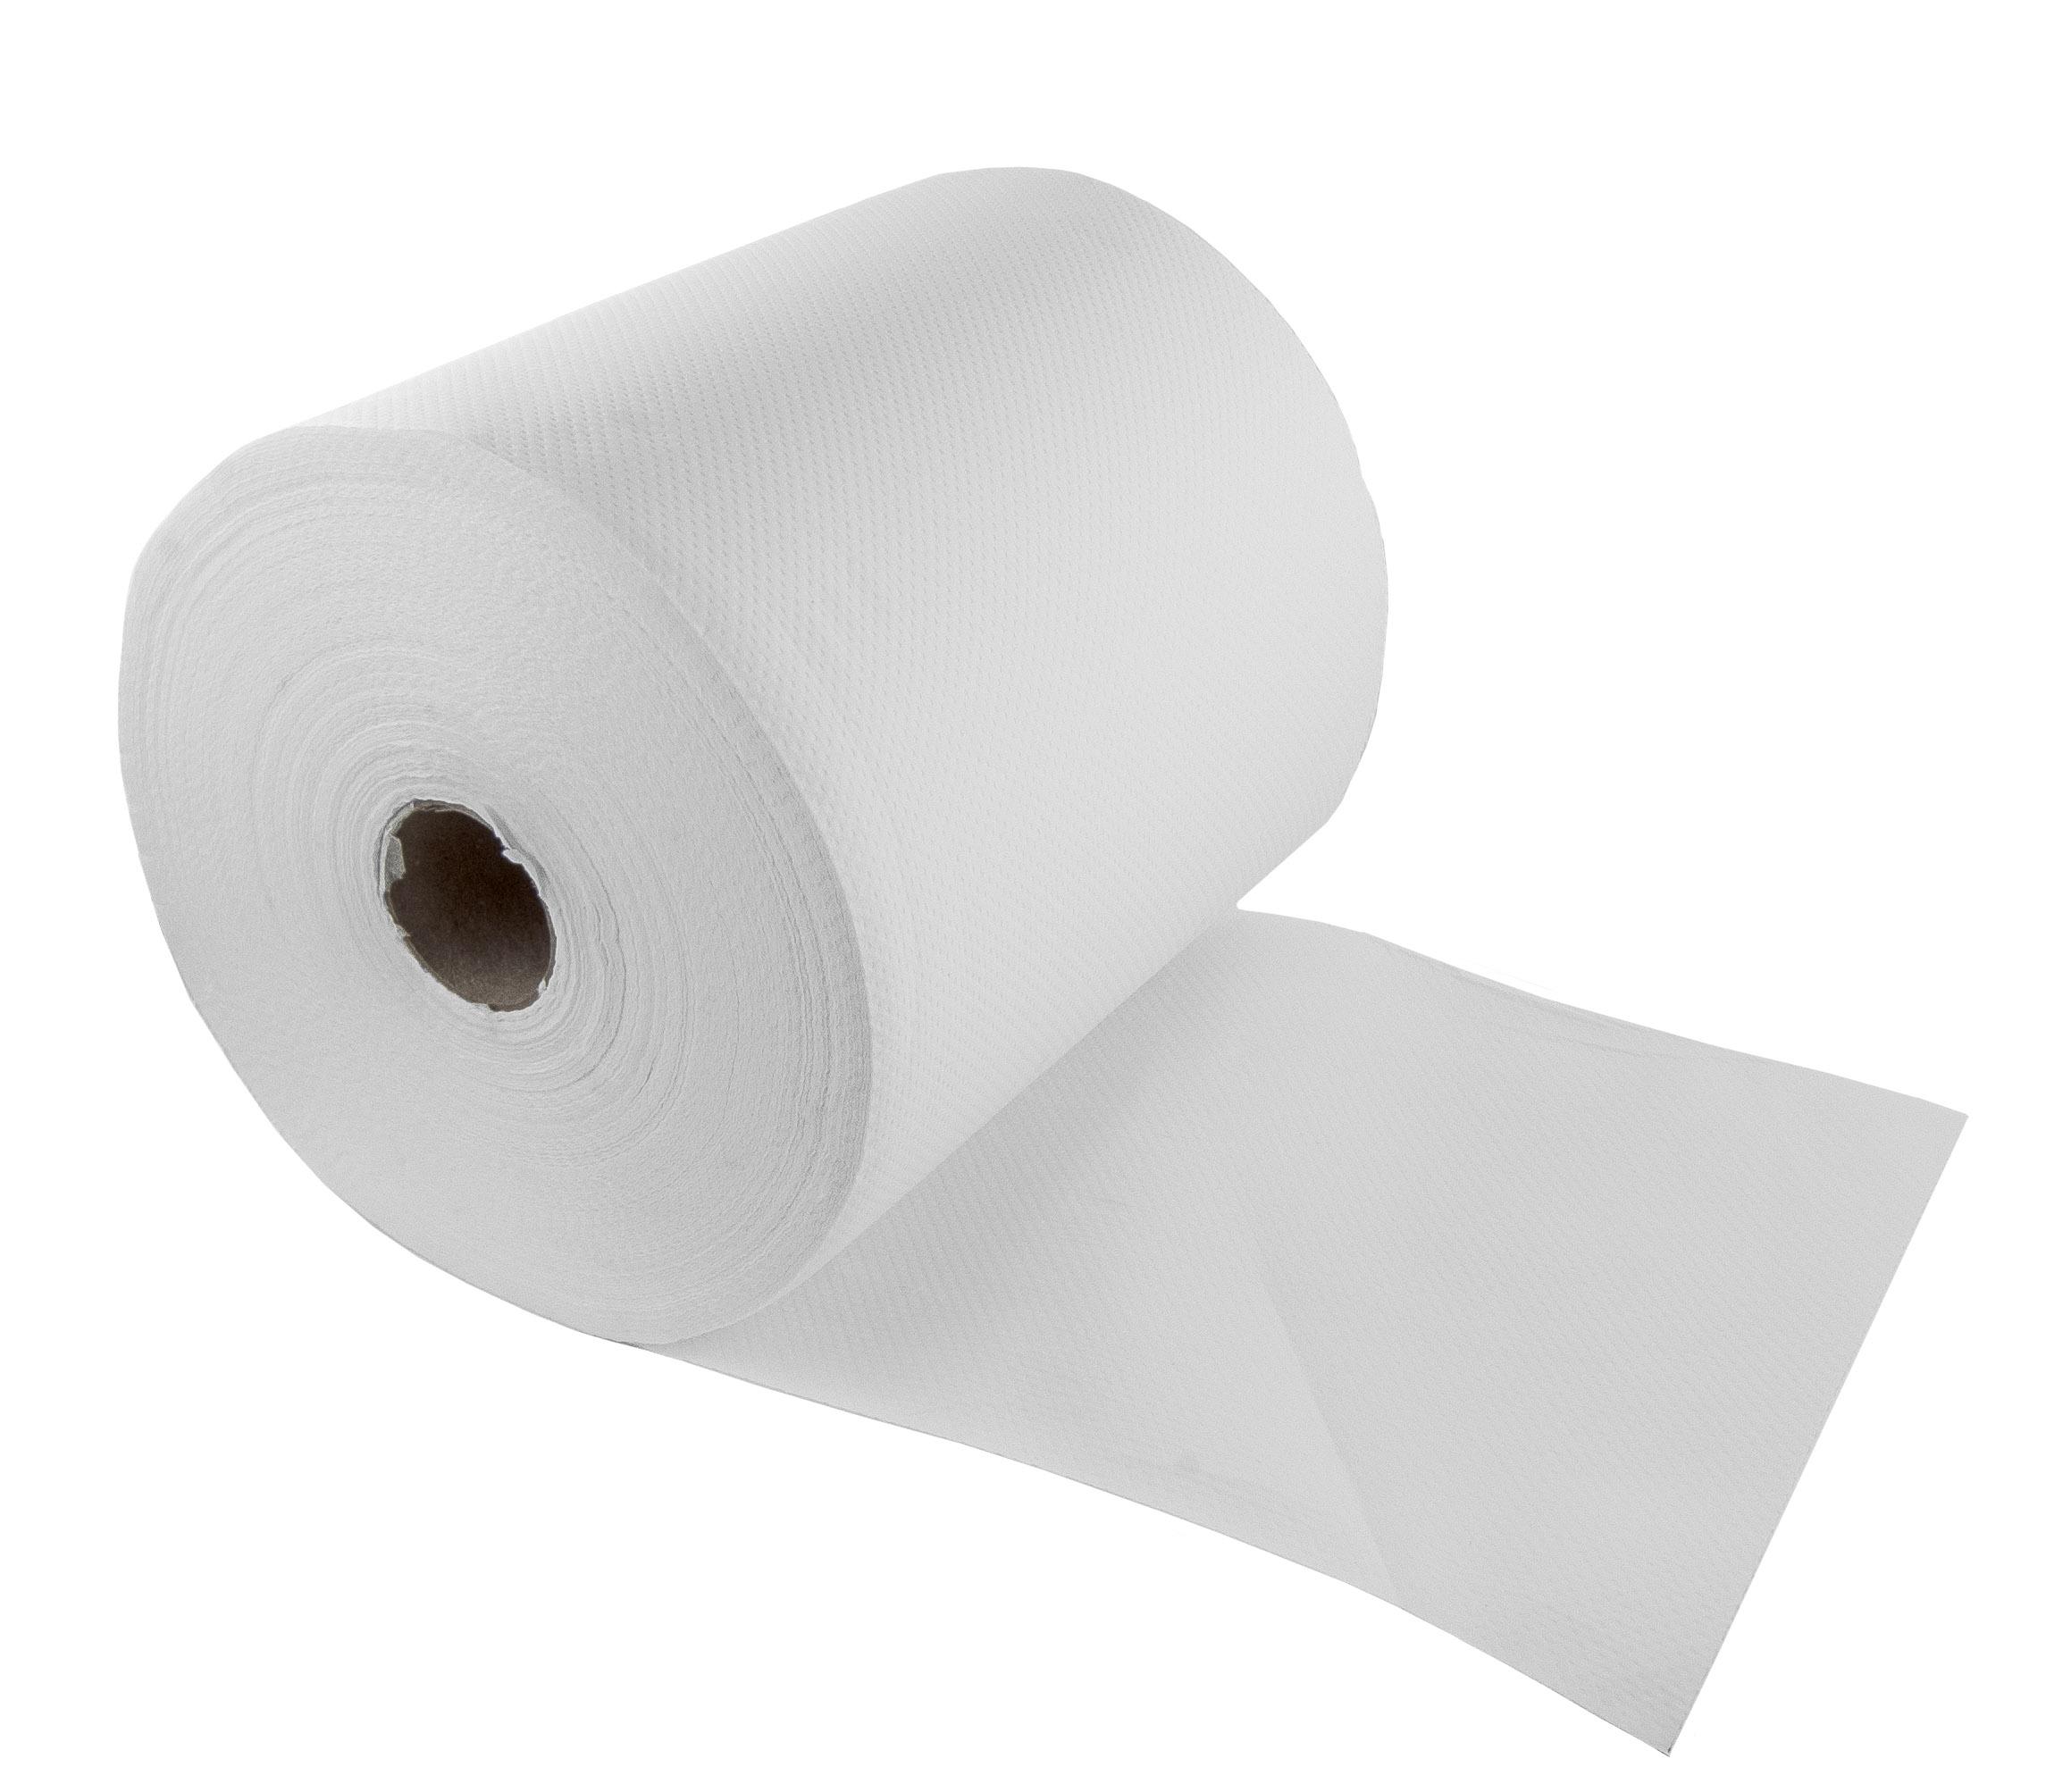 Zellstoff Papiertücher Rolle 2-lagig weiß 26 cm x 280 m | putzen reinigen abwischen Tücher